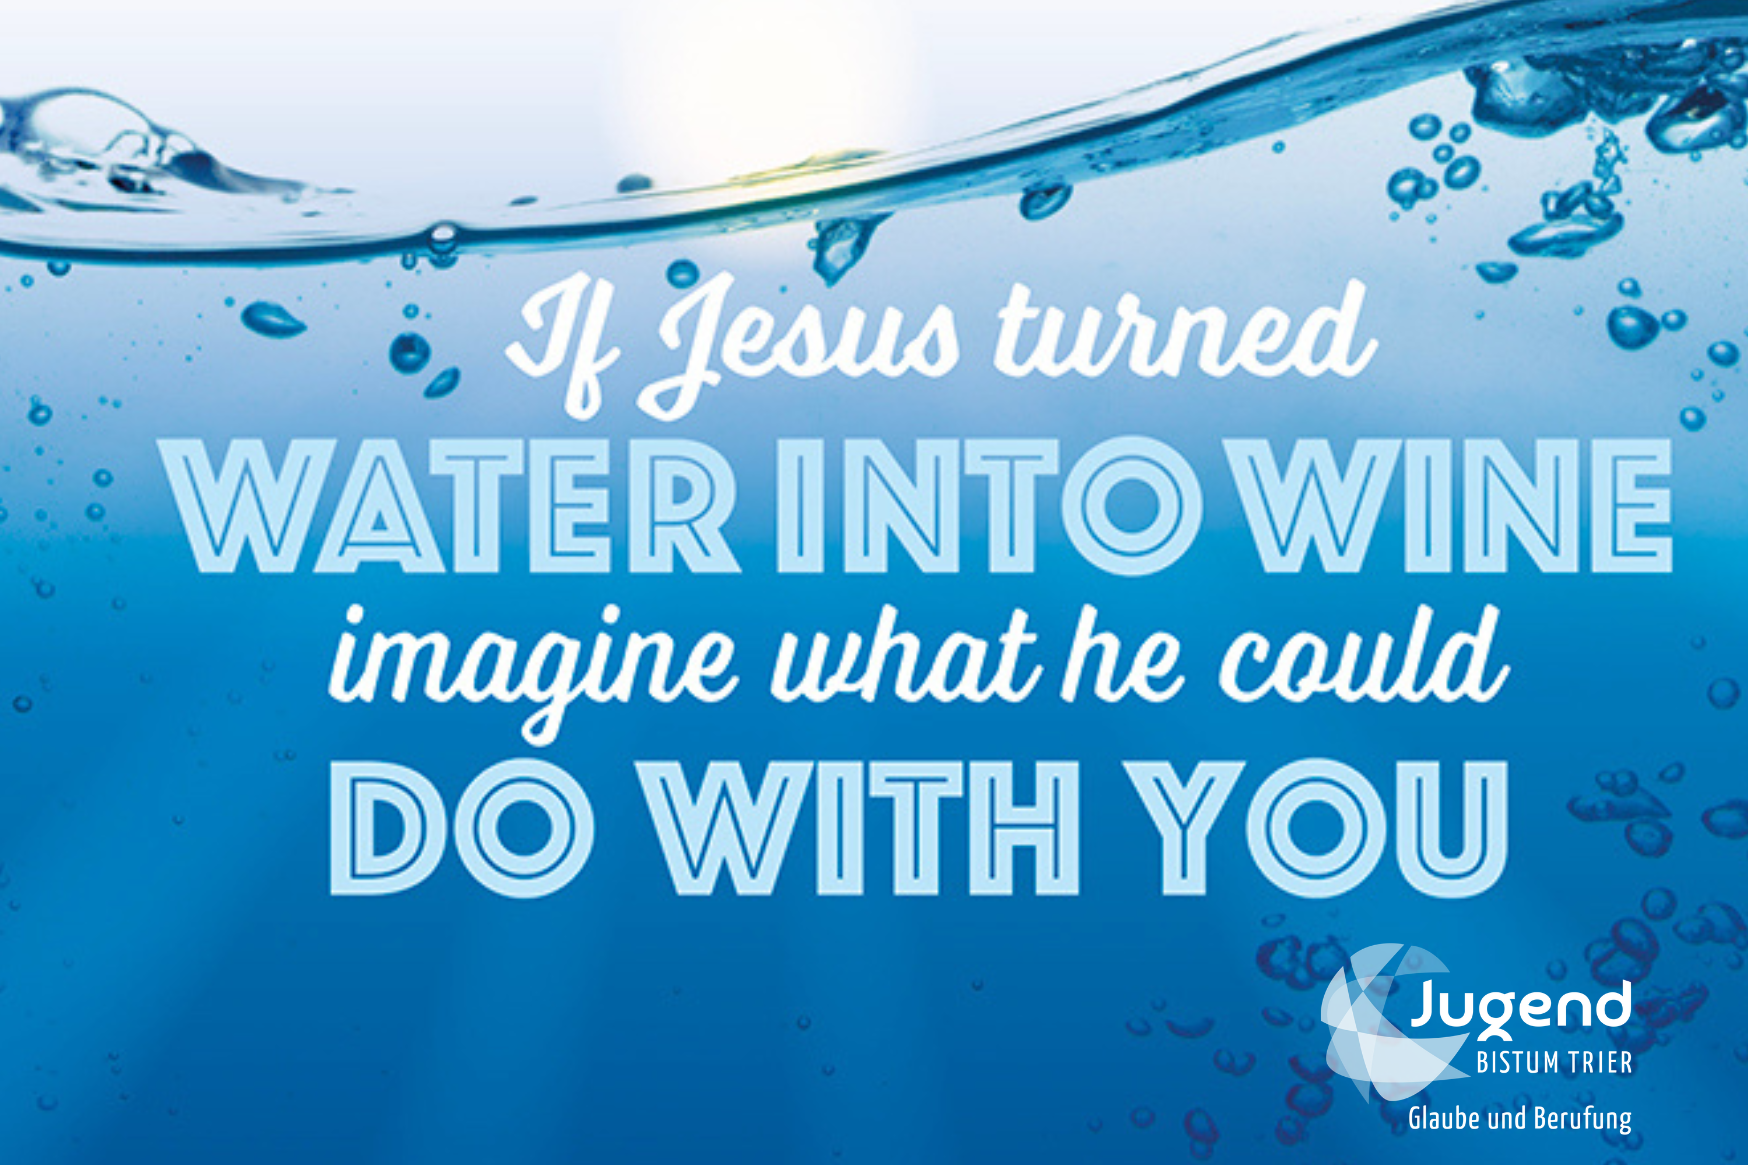 Vorderseite Postkarte-Glaube und Berufung_2024_if Jesus turned water